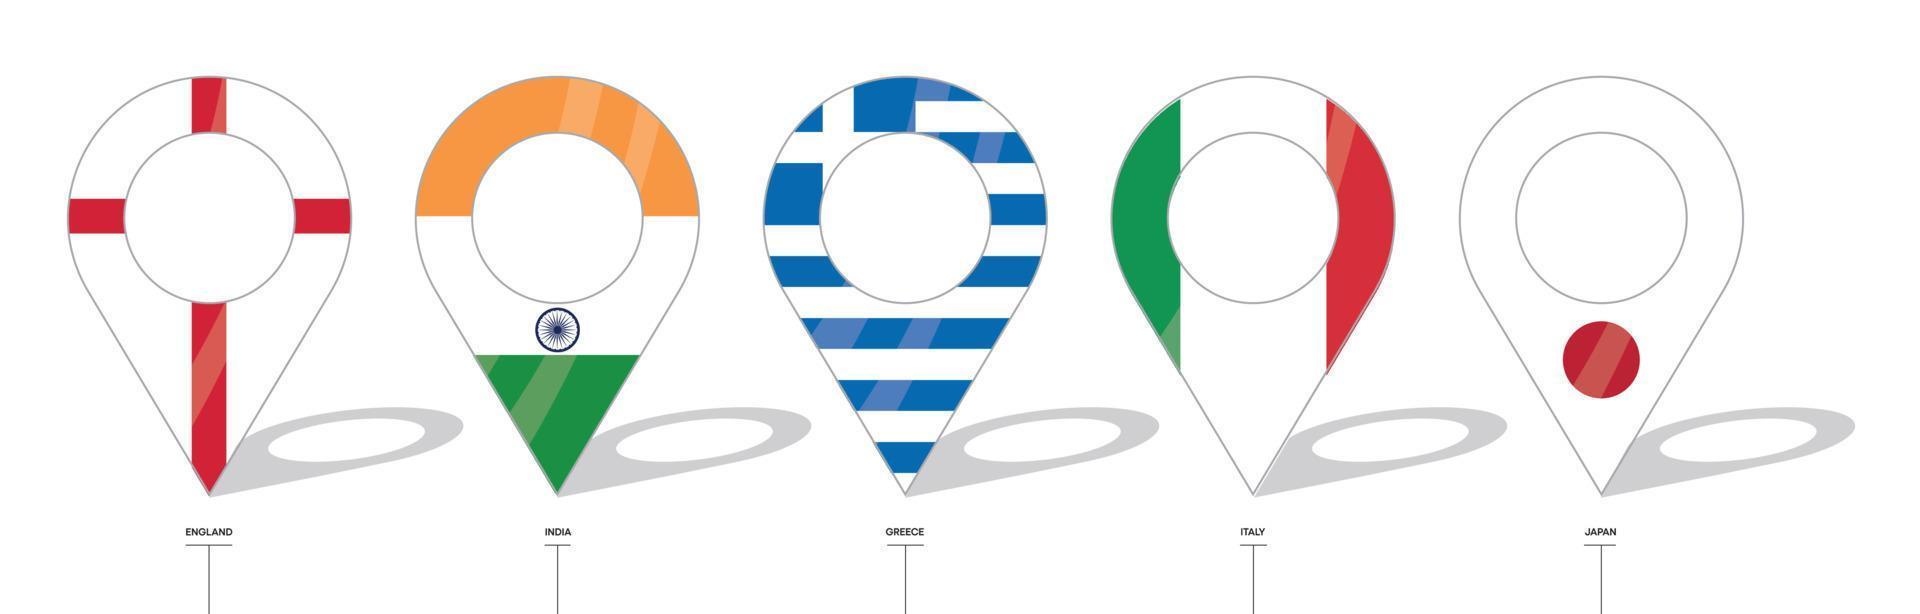 señal de ubicación de la bandera del país. iconos de la bandera de inglaterra, india, grecia, italia, japón. vector